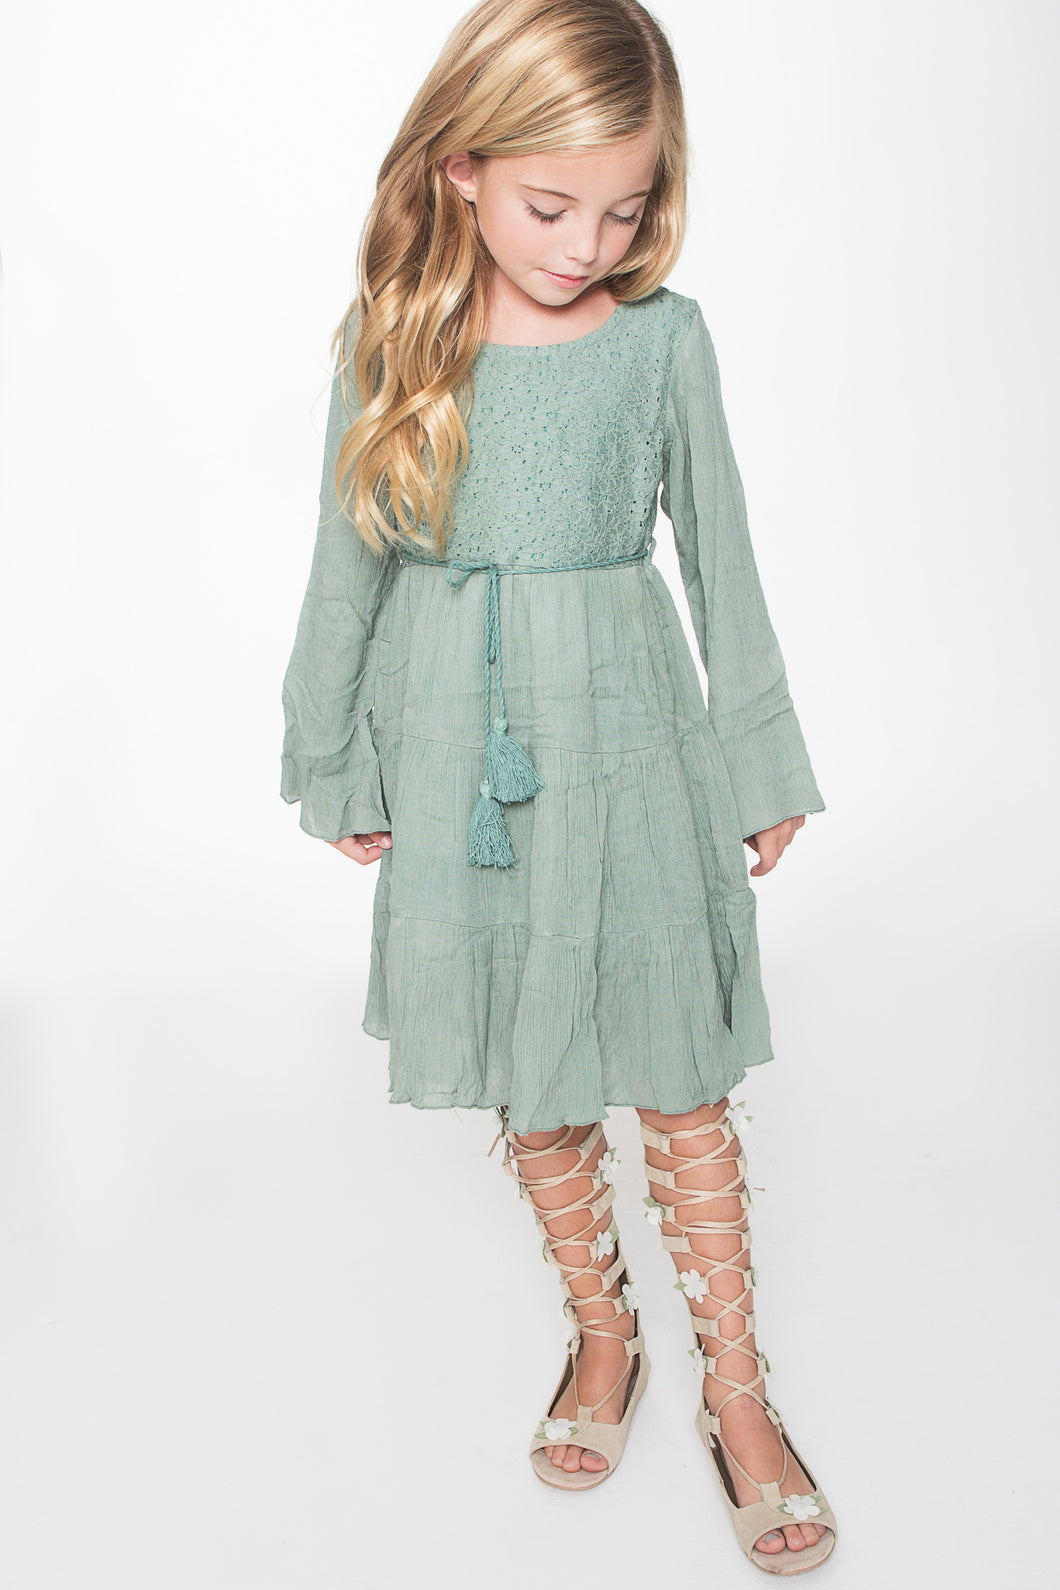 Sea Foam Green Dress - Kids Wholesale Boutique Clothing, Dress - Girls Dresses, Yo Baby Wholesale - Yo Baby